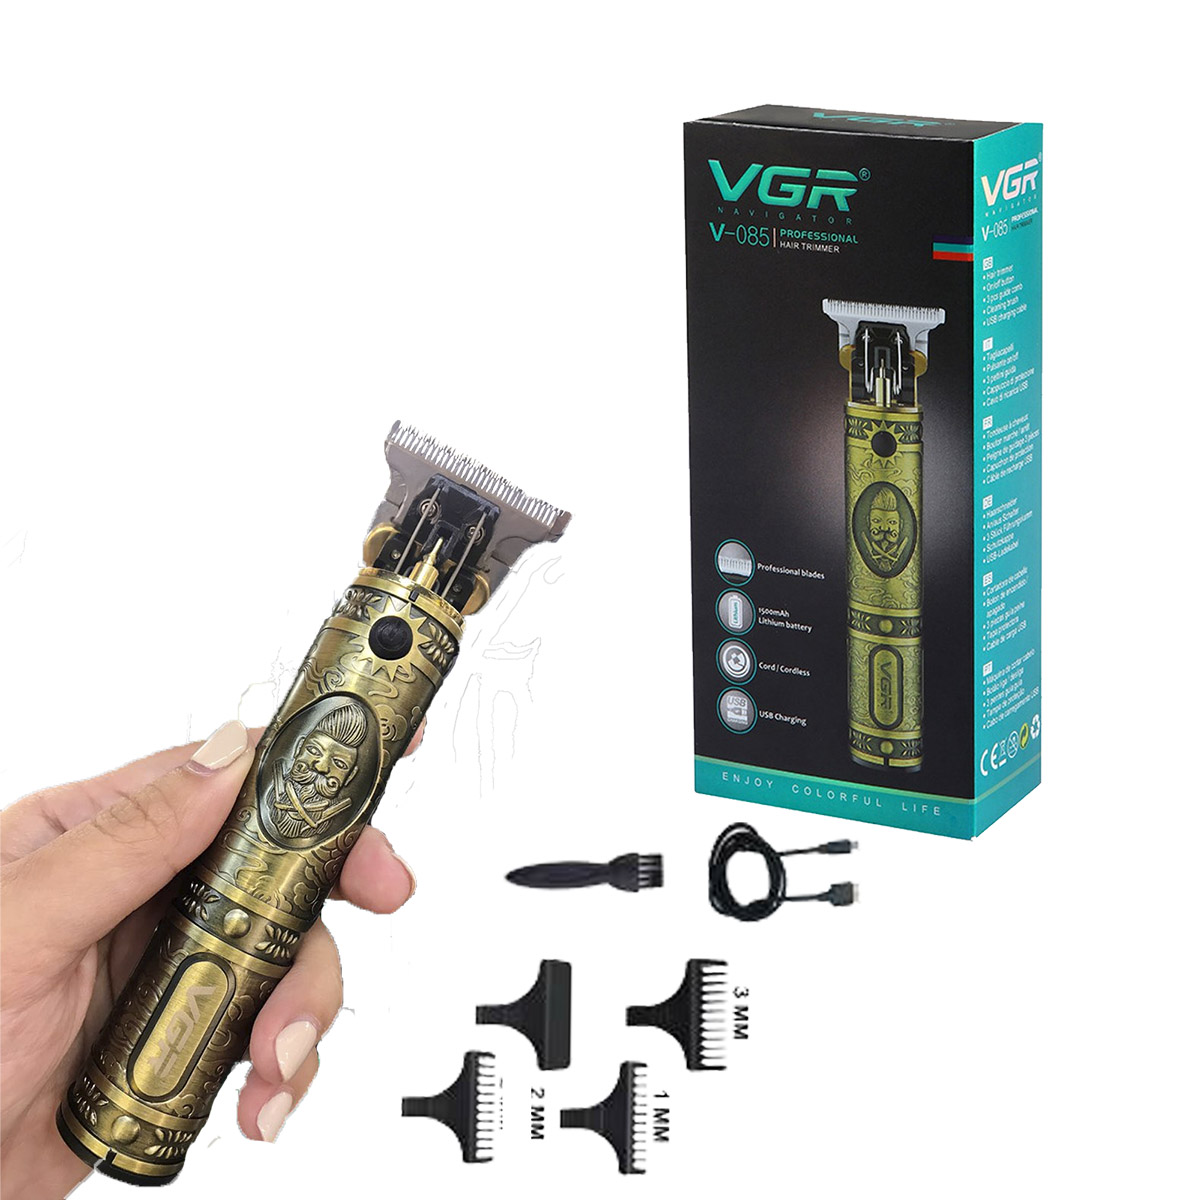 VGR voyager V-085 professional hair trimmer